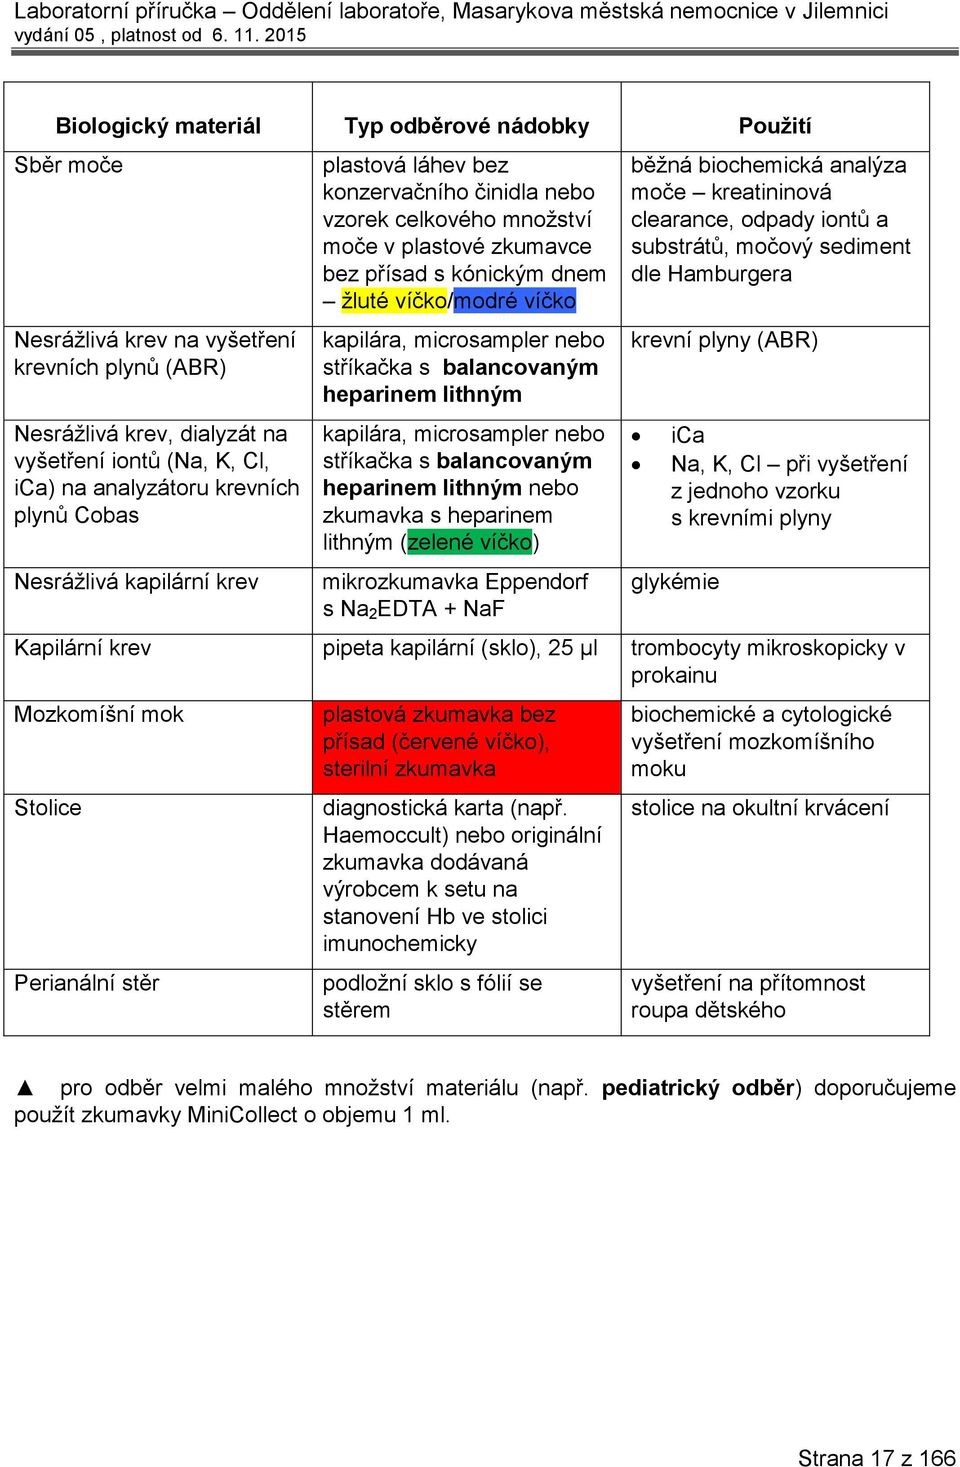 microsampler nebo stříkačka s balancovaným heparinem lithným kapilára, microsampler nebo stříkačka s balancovaným heparinem lithným nebo zkumavka s heparinem lithným (zelené víčko) mikrozkumavka